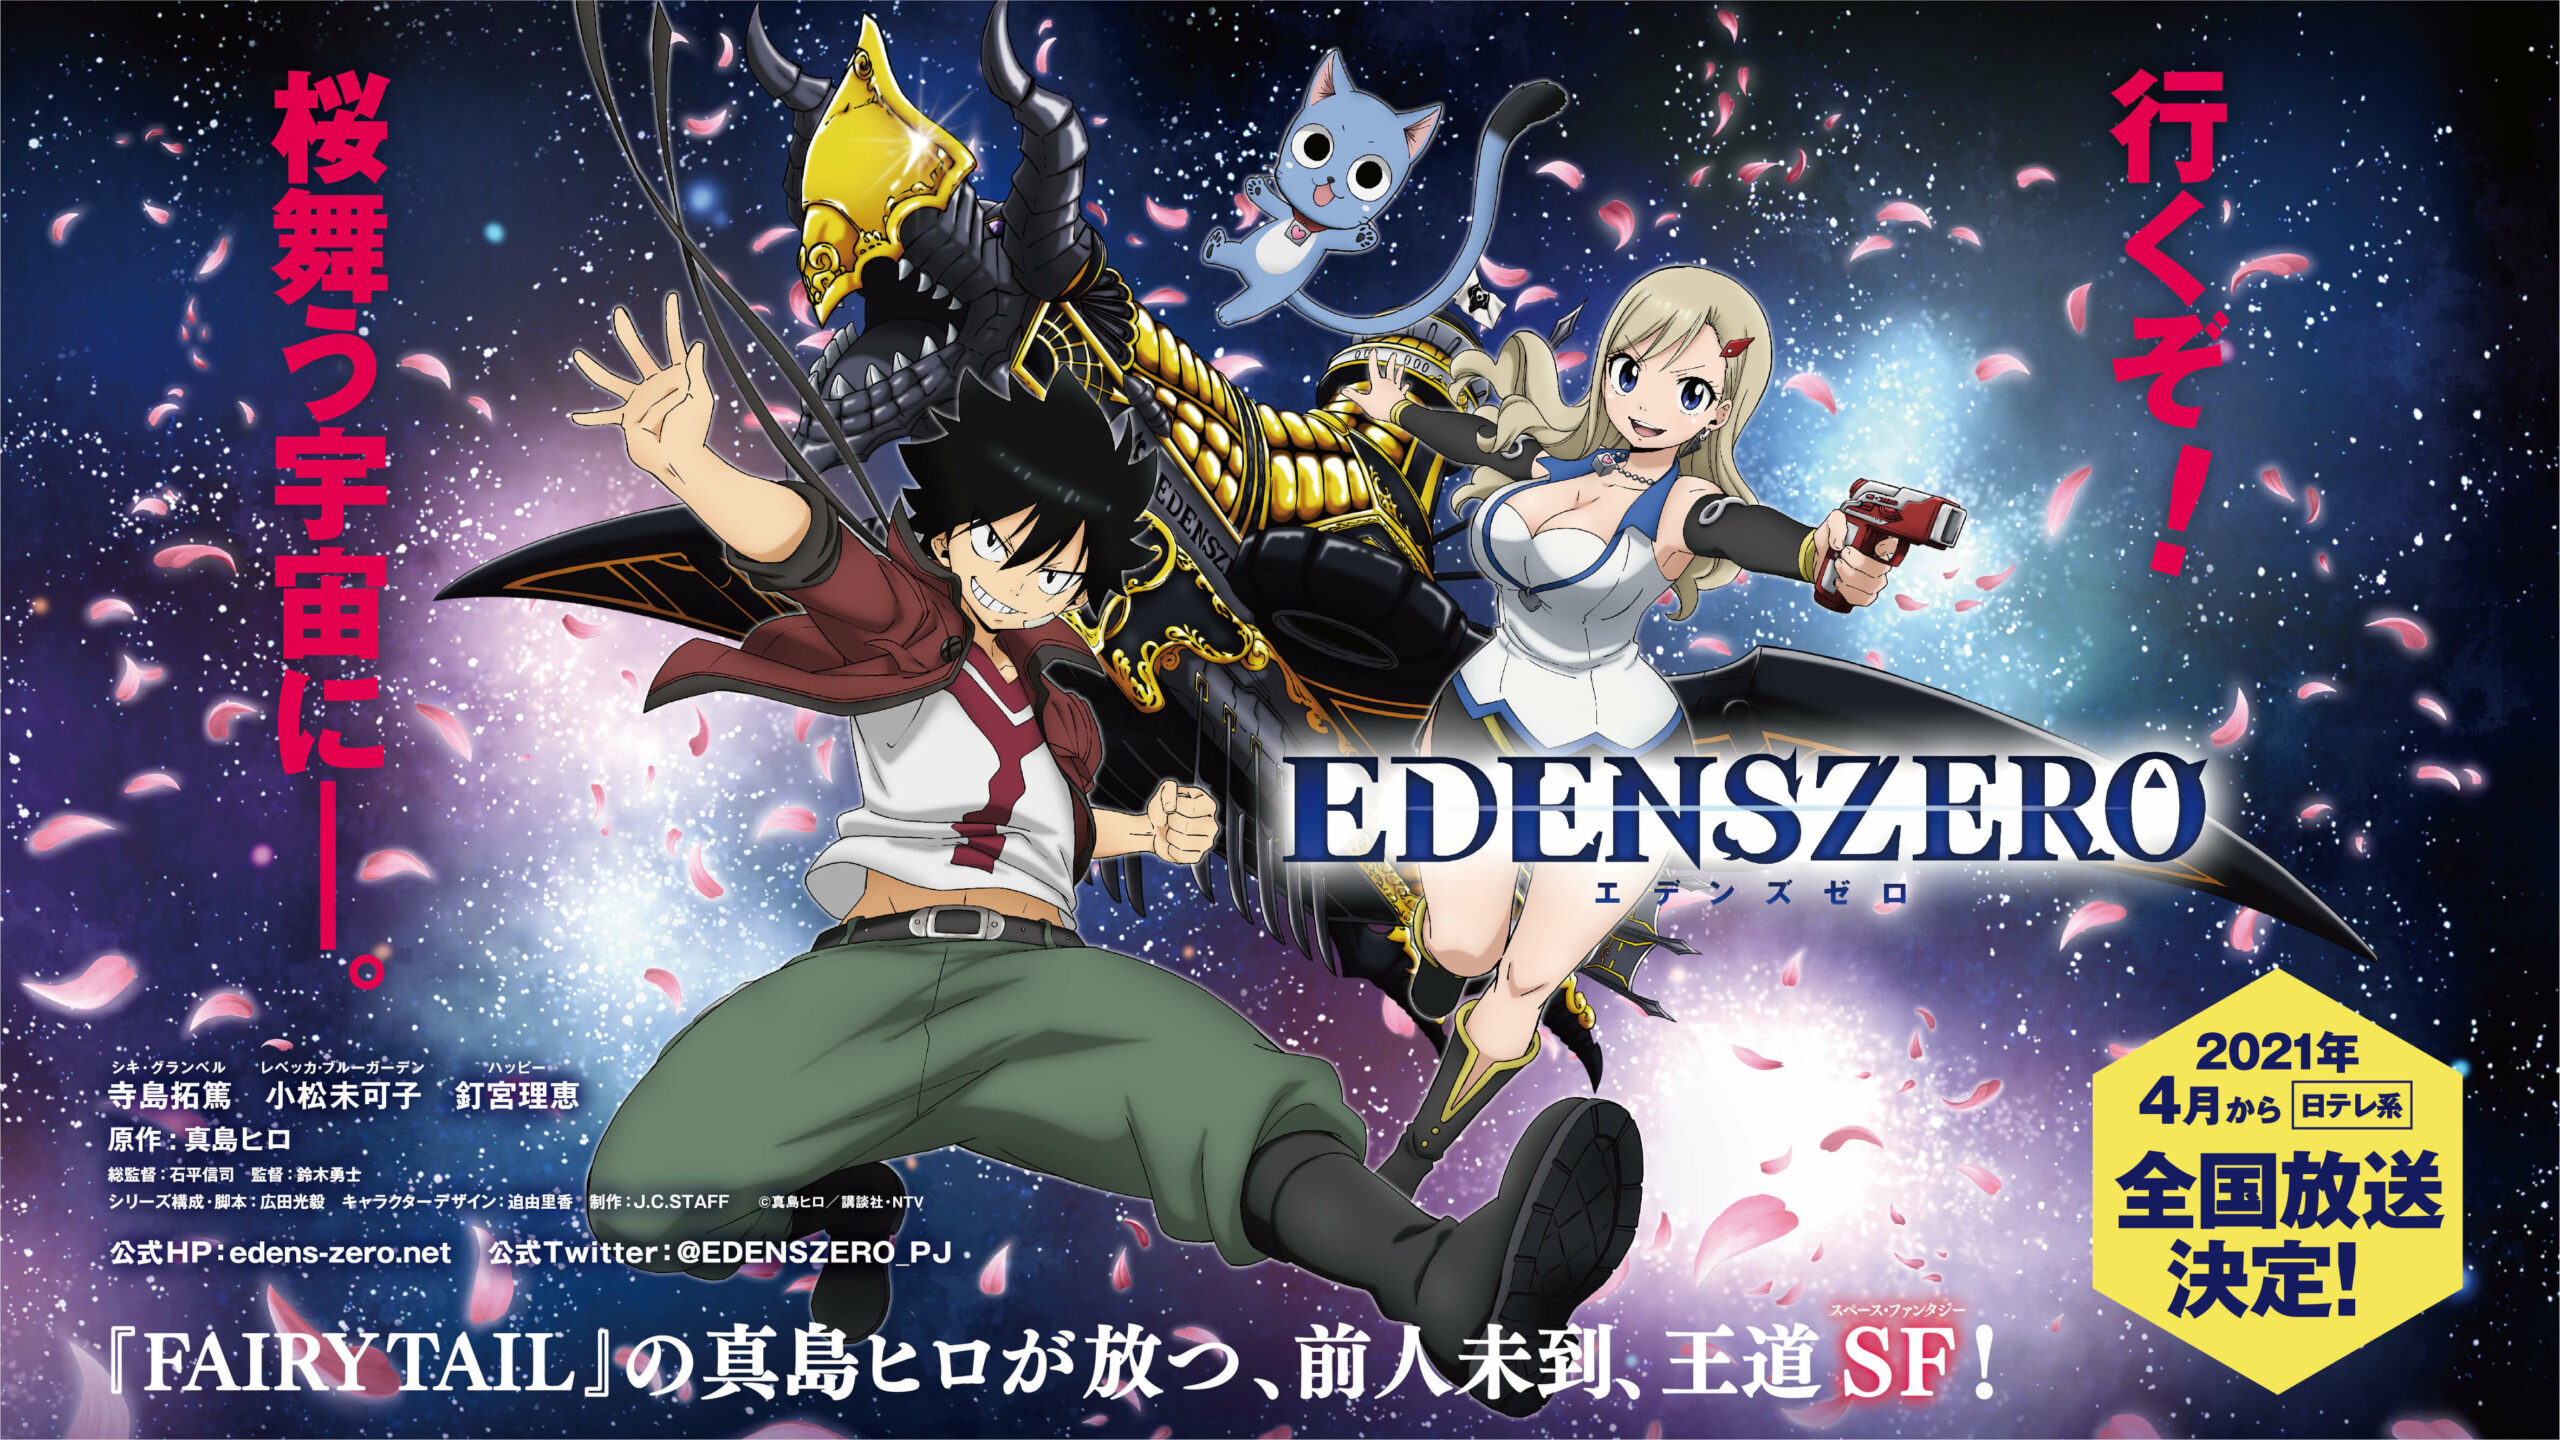 Edens Zero Anime enthüllt bestätigtes Erscheinungsdatum im April mit Trailer